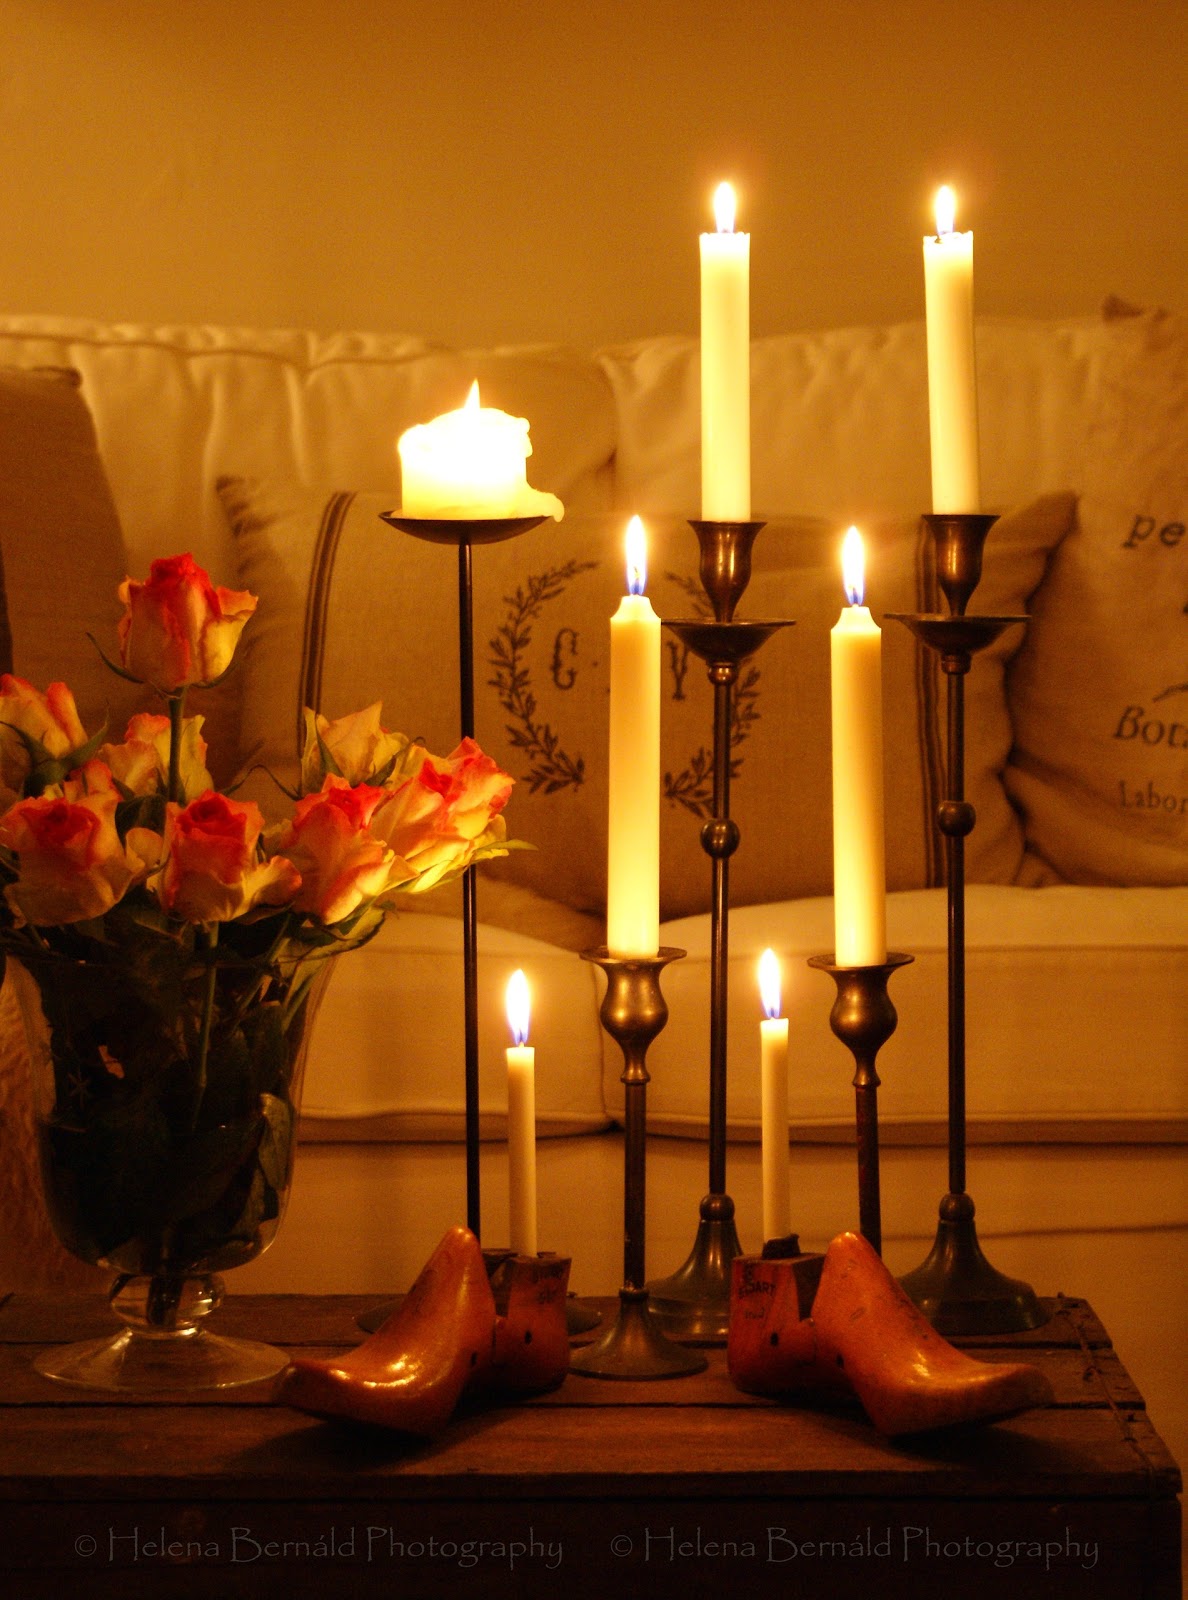 Luminary свечи. Романтические свечи. Интерьерные свечи. Свечи в интерьере. Канделябр со свечами.